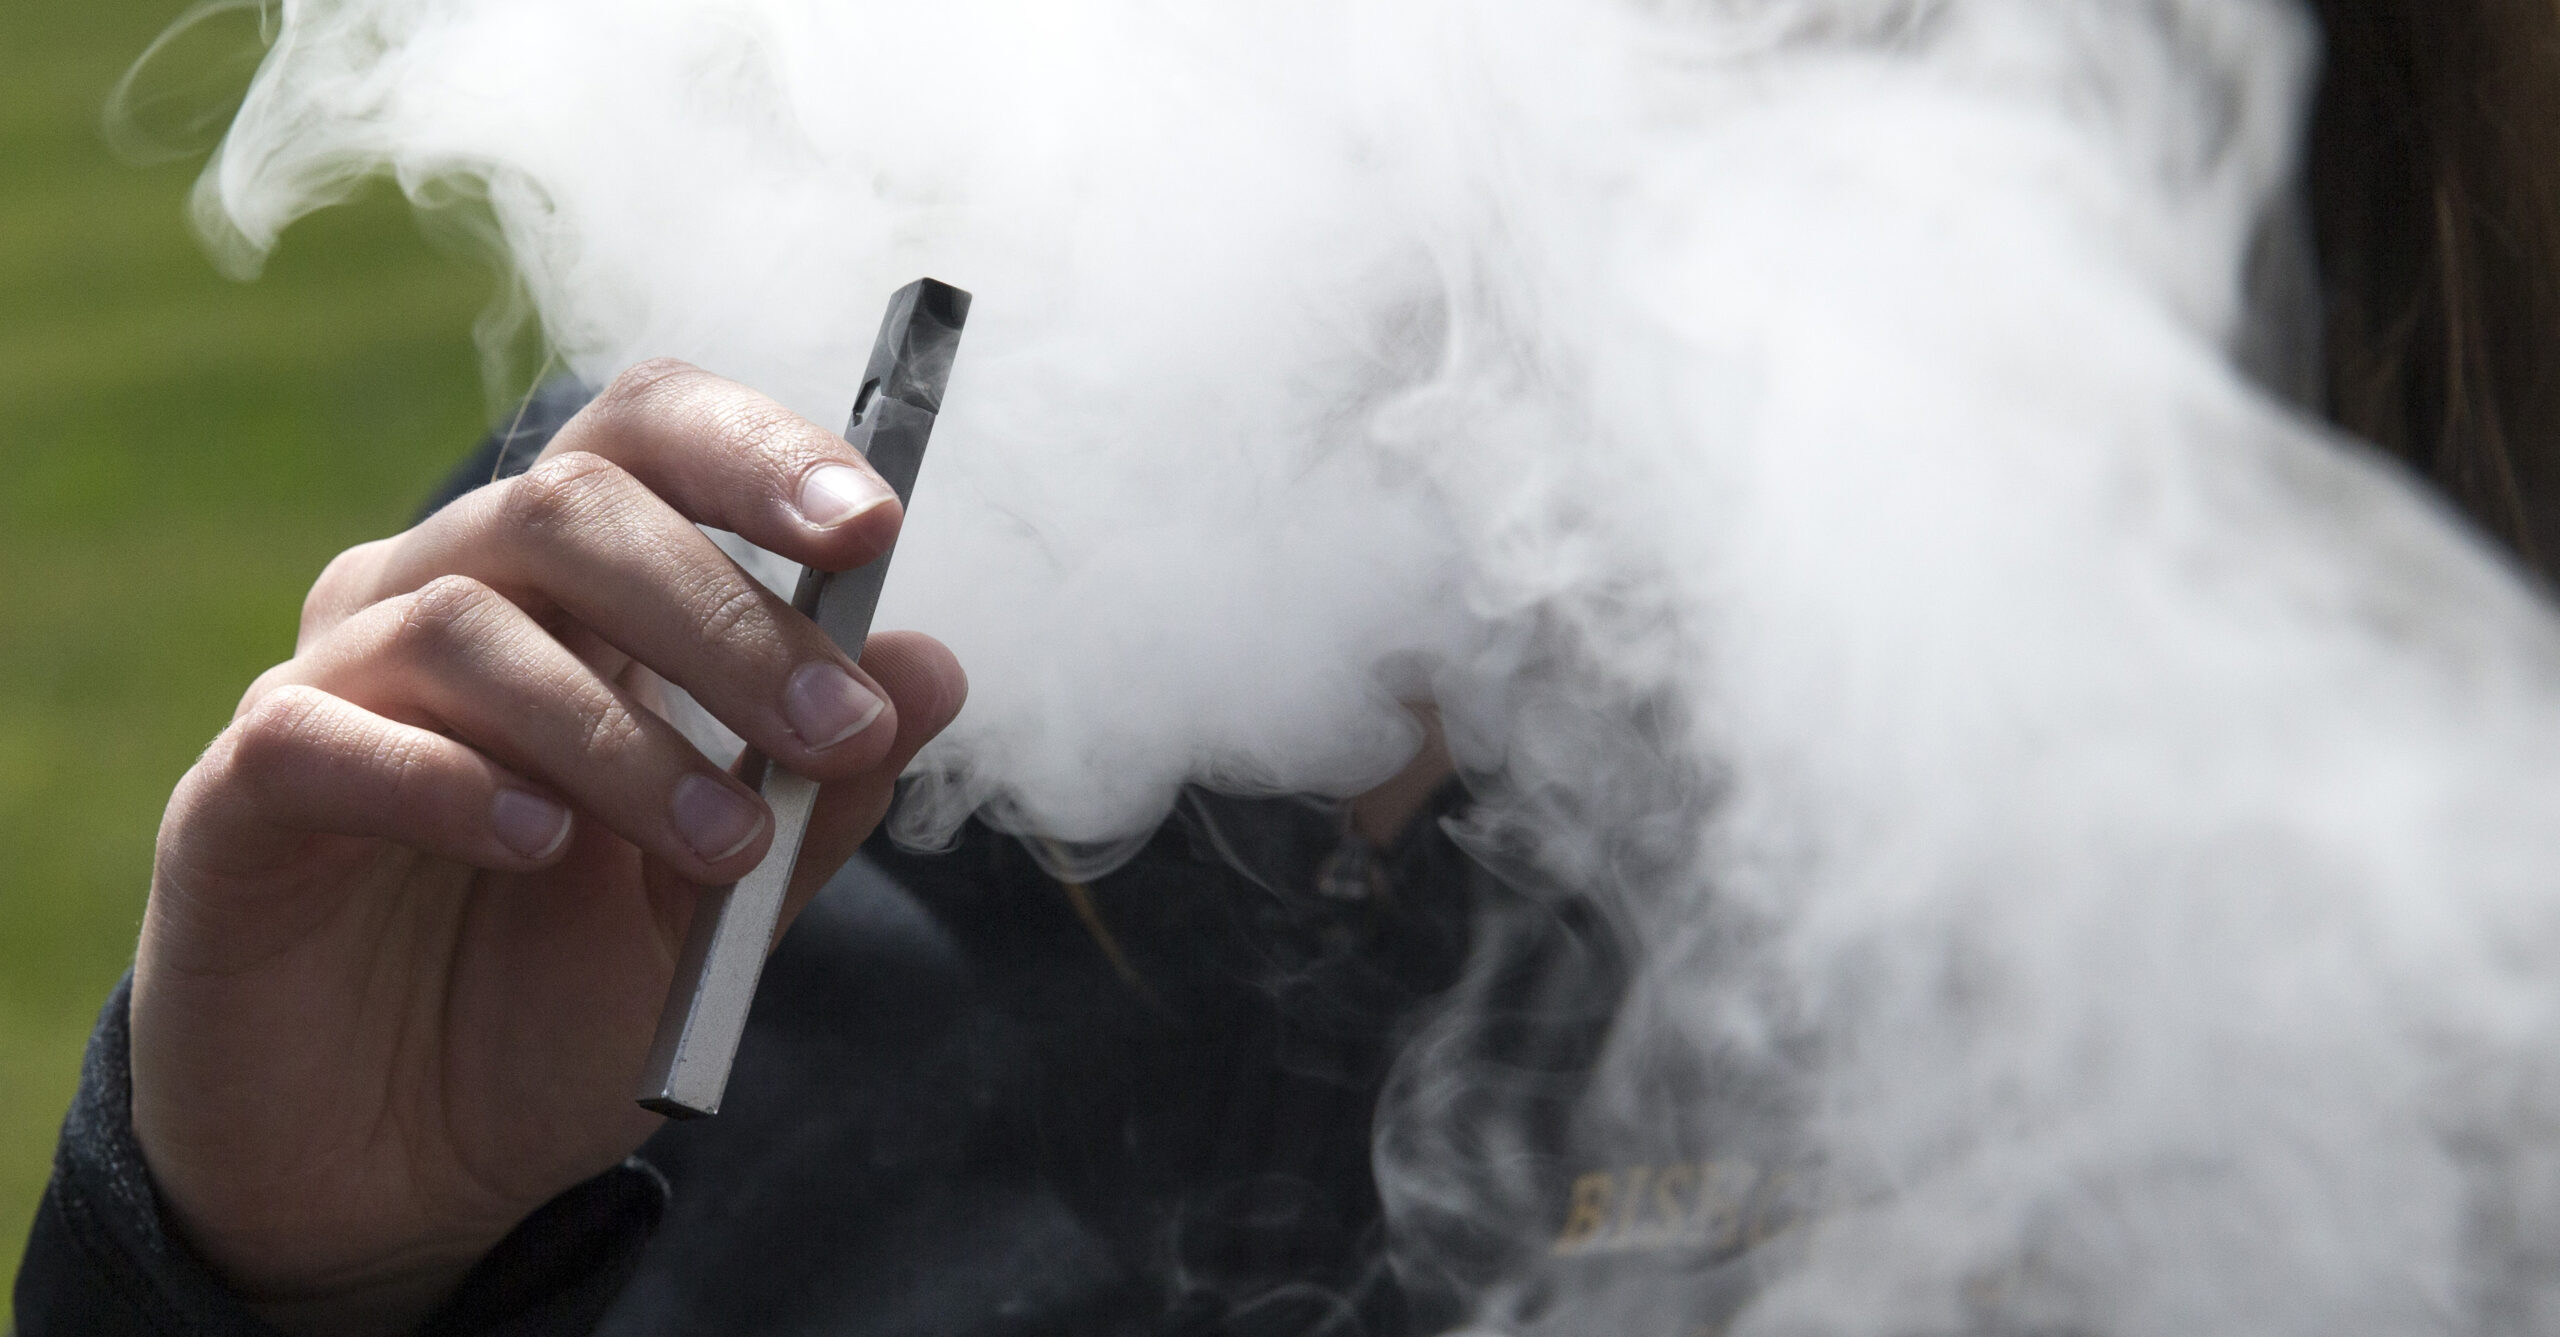 SF e-cigarette giant Juul settles 5K claims over teen vaping